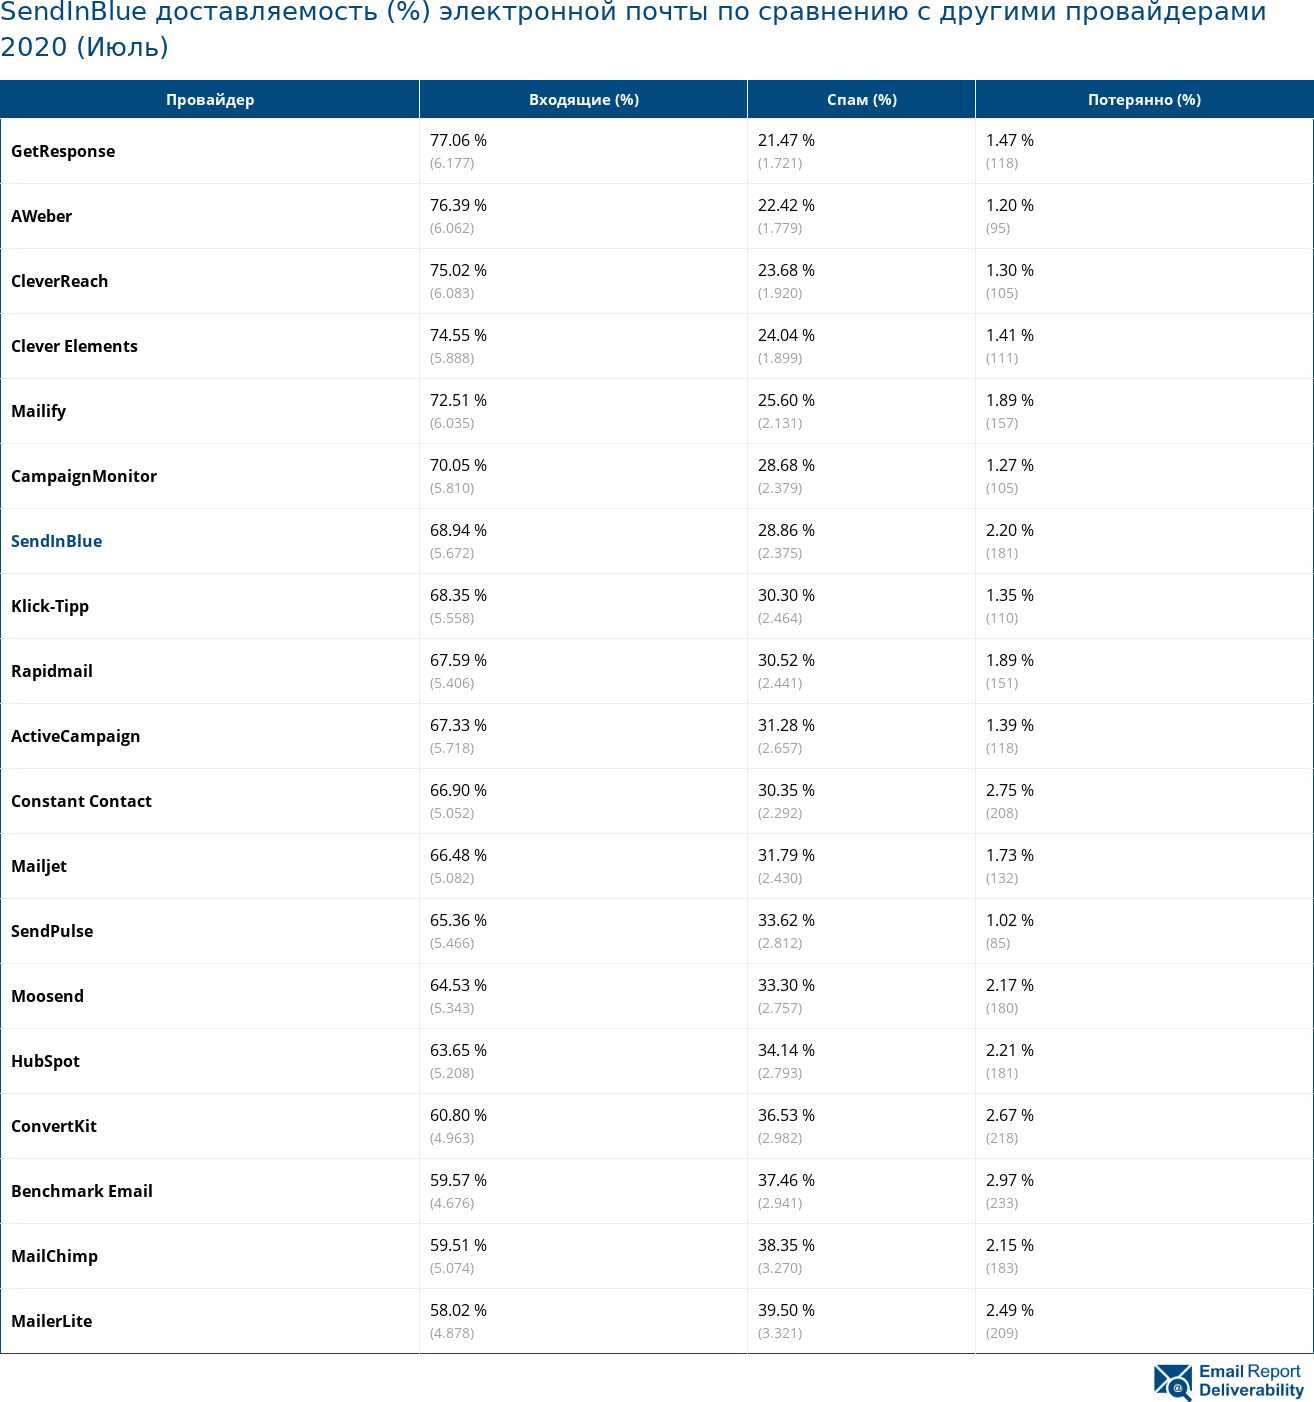 SendInBlue доставляемость (%) электронной почты по сравнению с другими провайдерами 2020 (Июль)